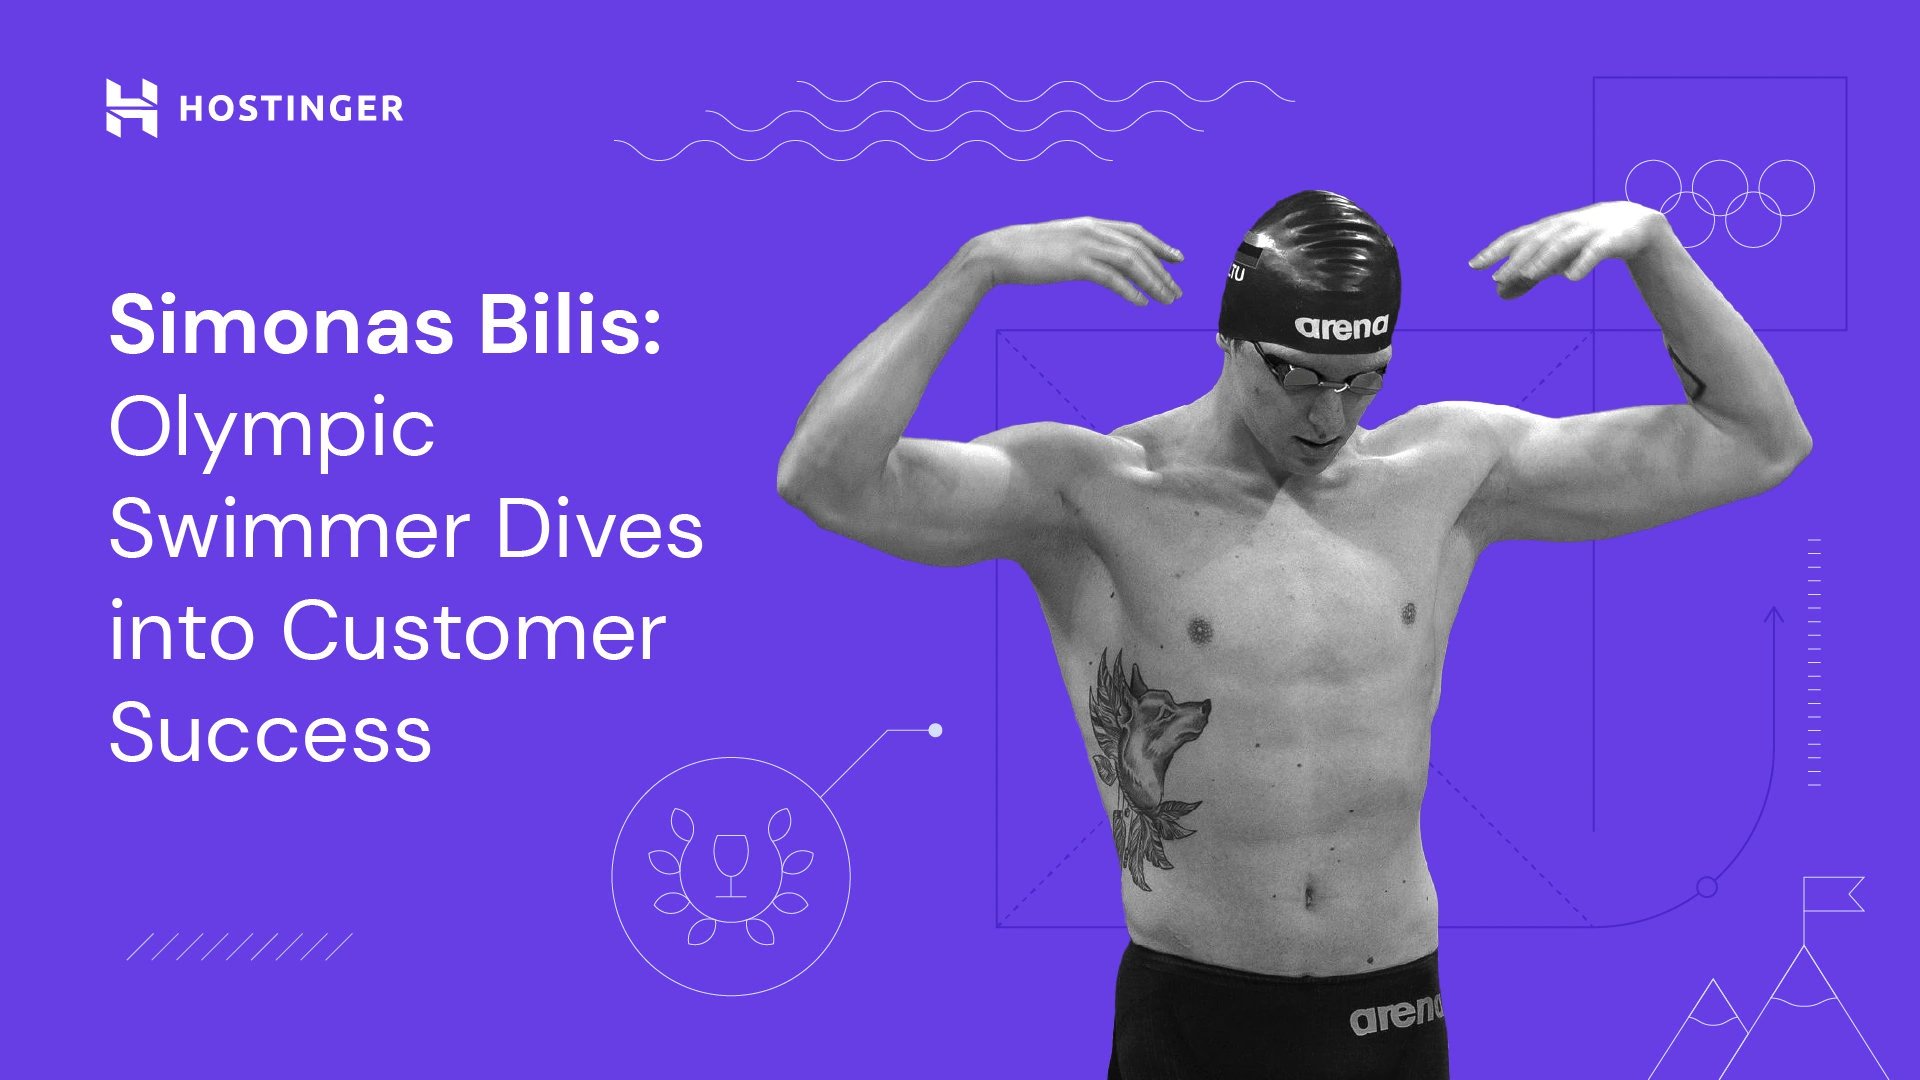 شناگر المپیکی سیموناس بیلیس به دنبال موفقیت مشتری است